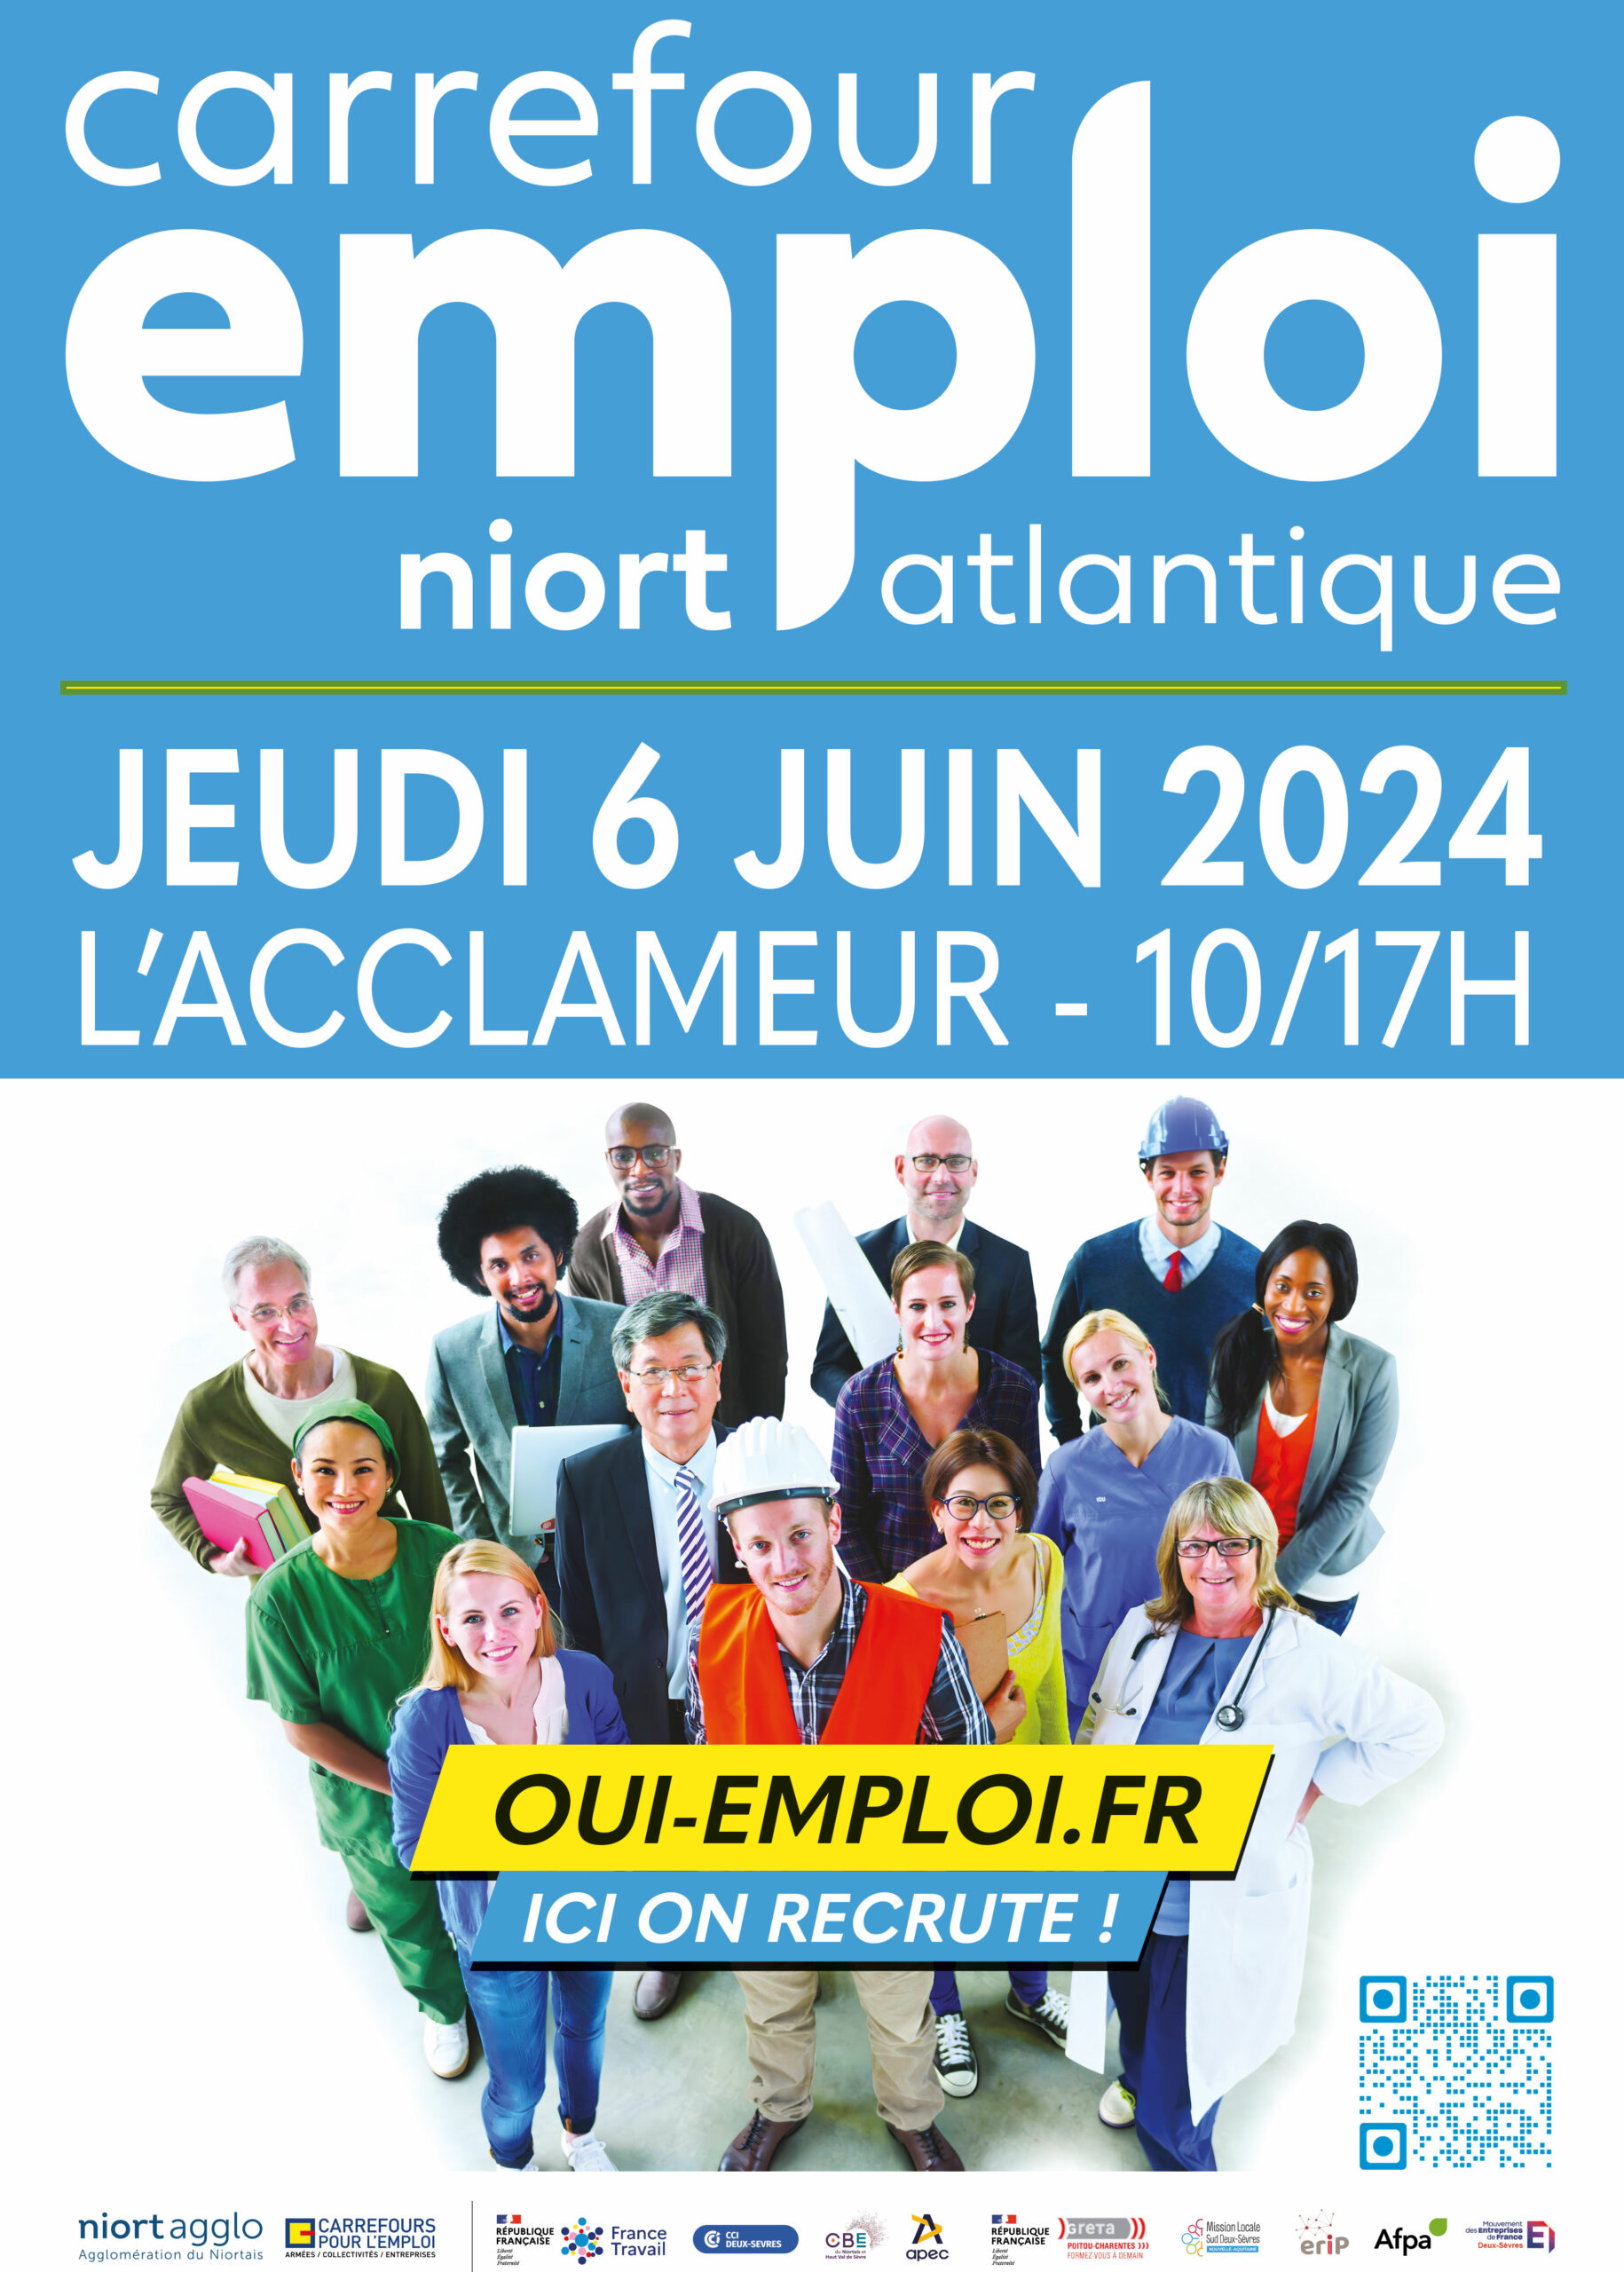 Affiche du salon Carrefour Emploi à Niort salle l'Acclameur le 6 juin 2024. Offres d'emploi, recrutement, formations